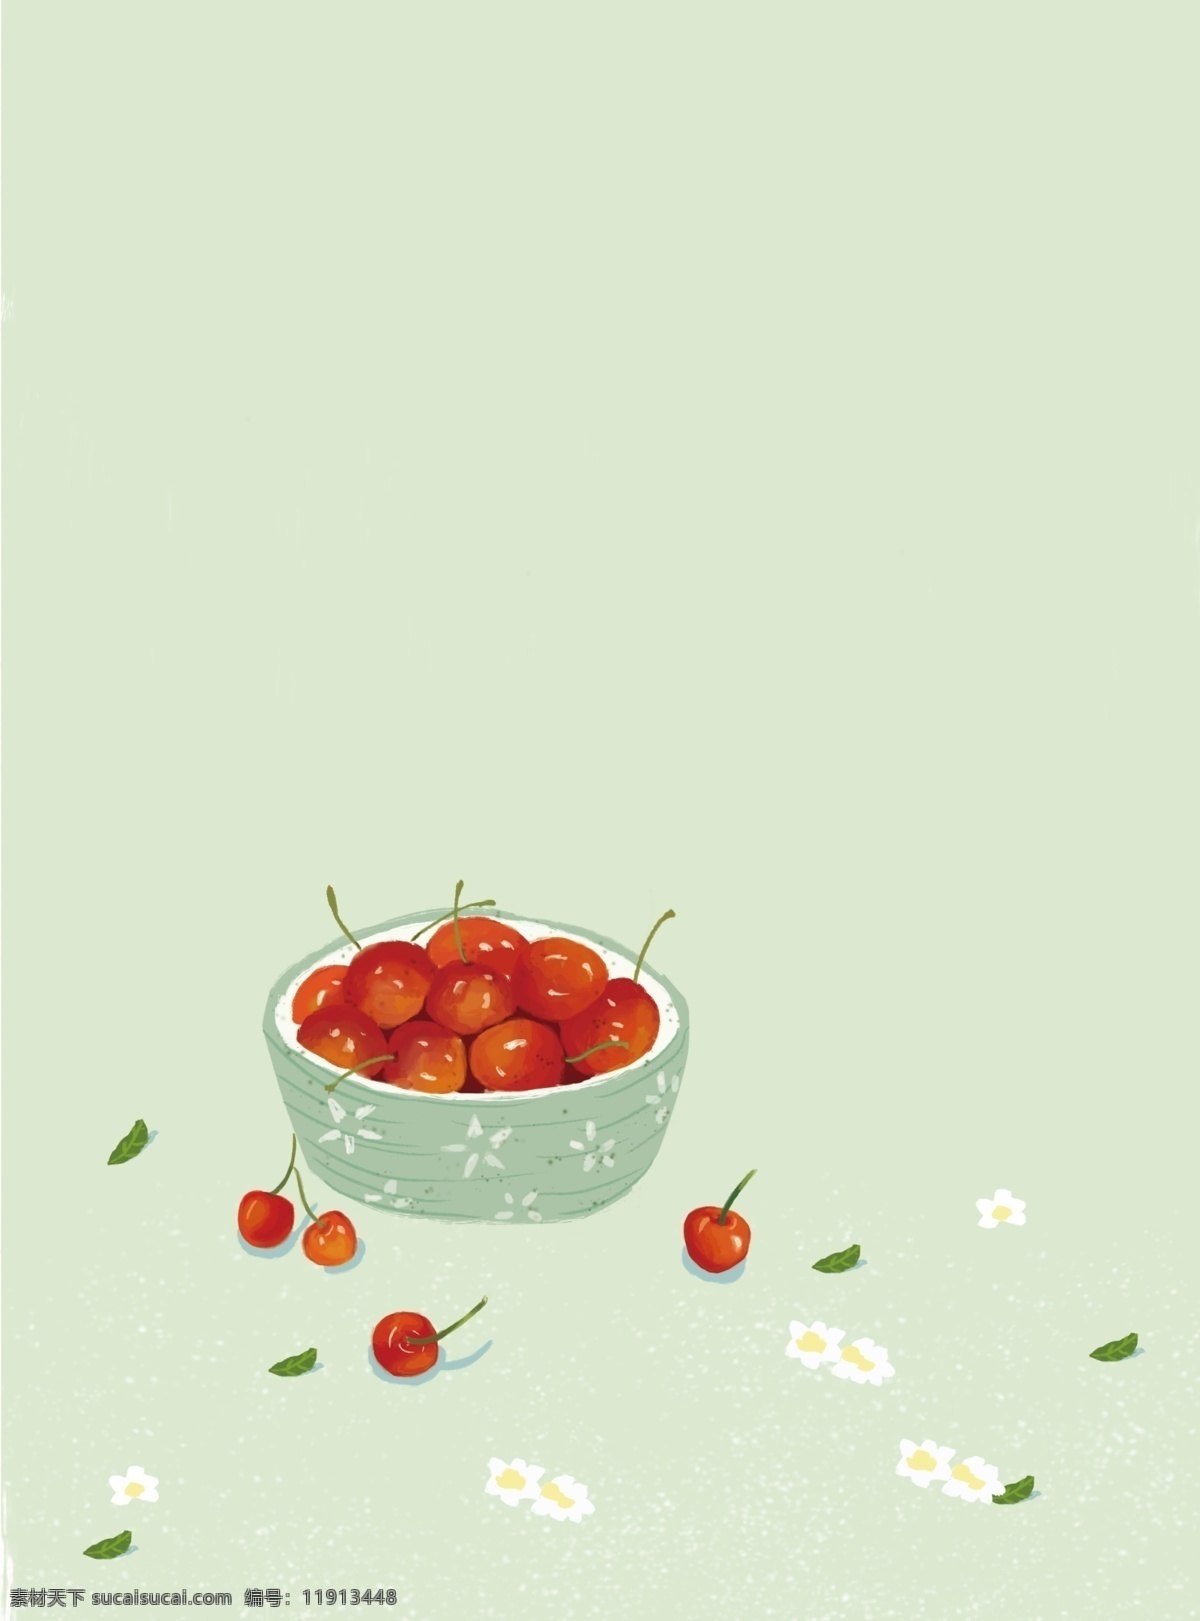 绿色 背景 红色 樱桃 插画 清新 唯美 水果